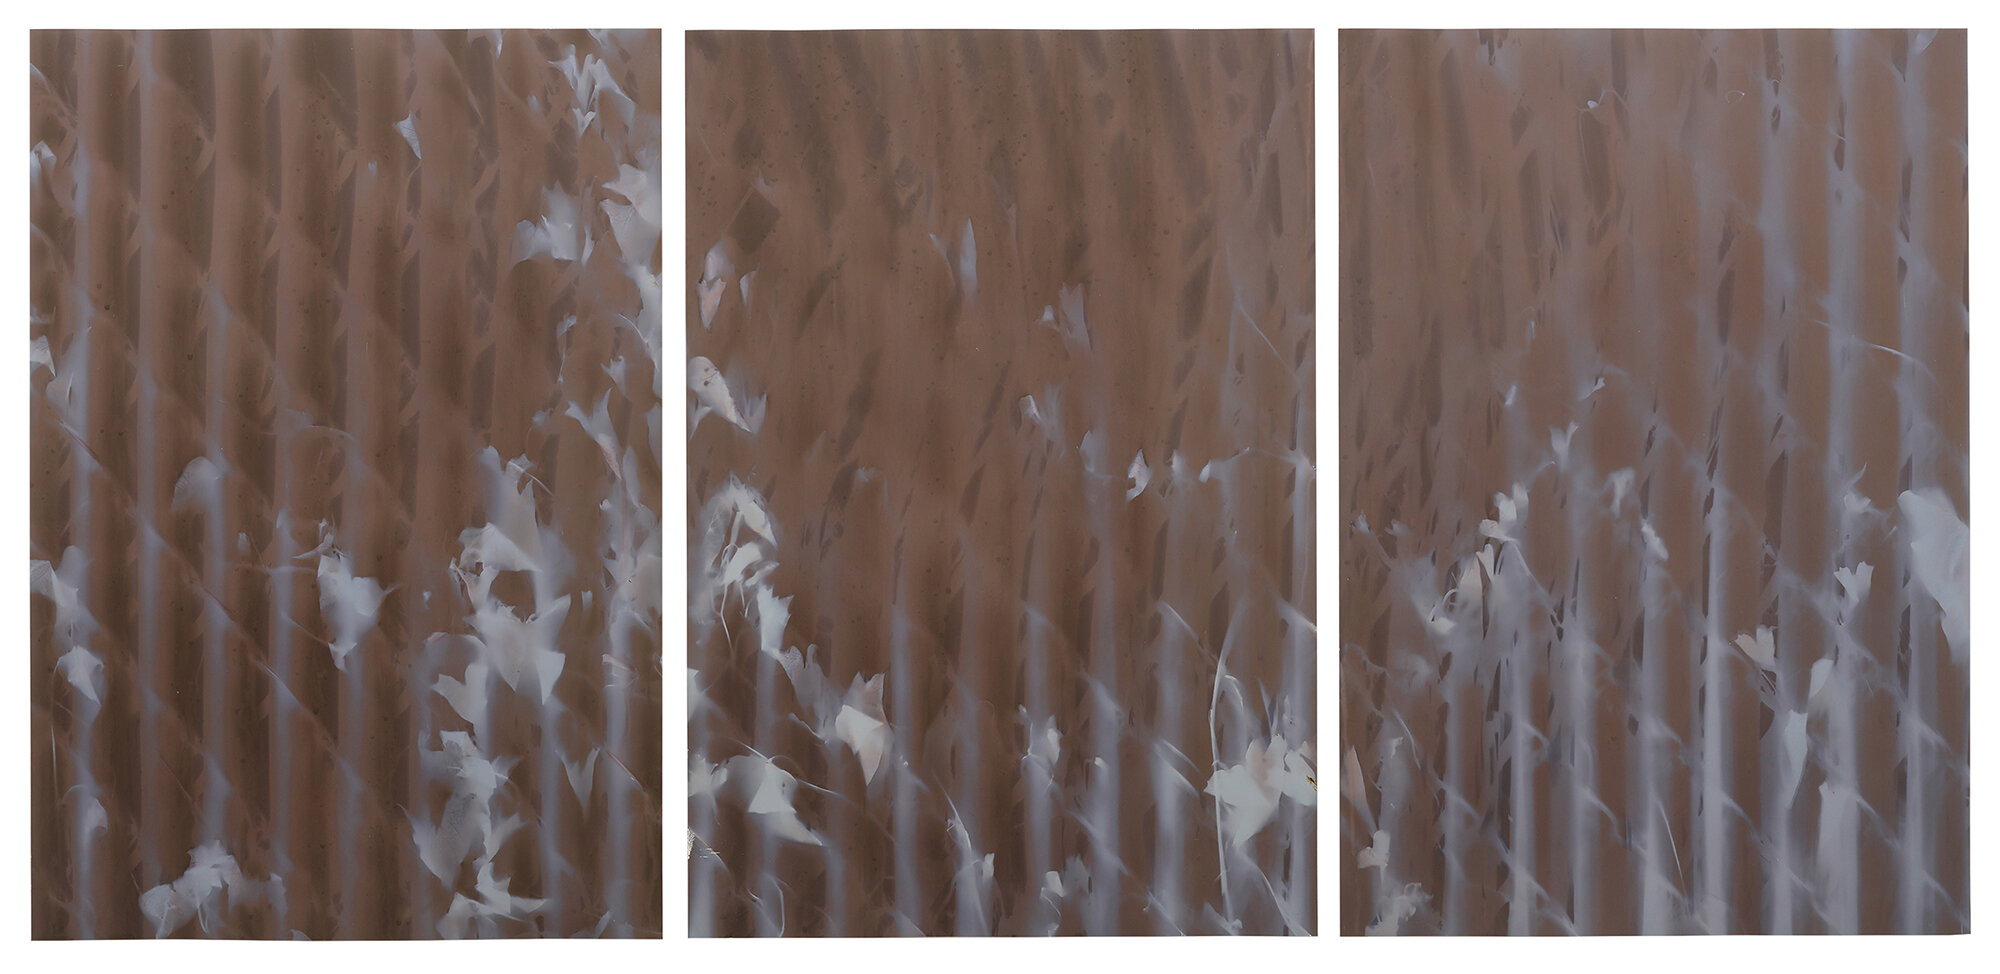  red hook triptych #3 wolcott st  20” x 42”  lumen prints 